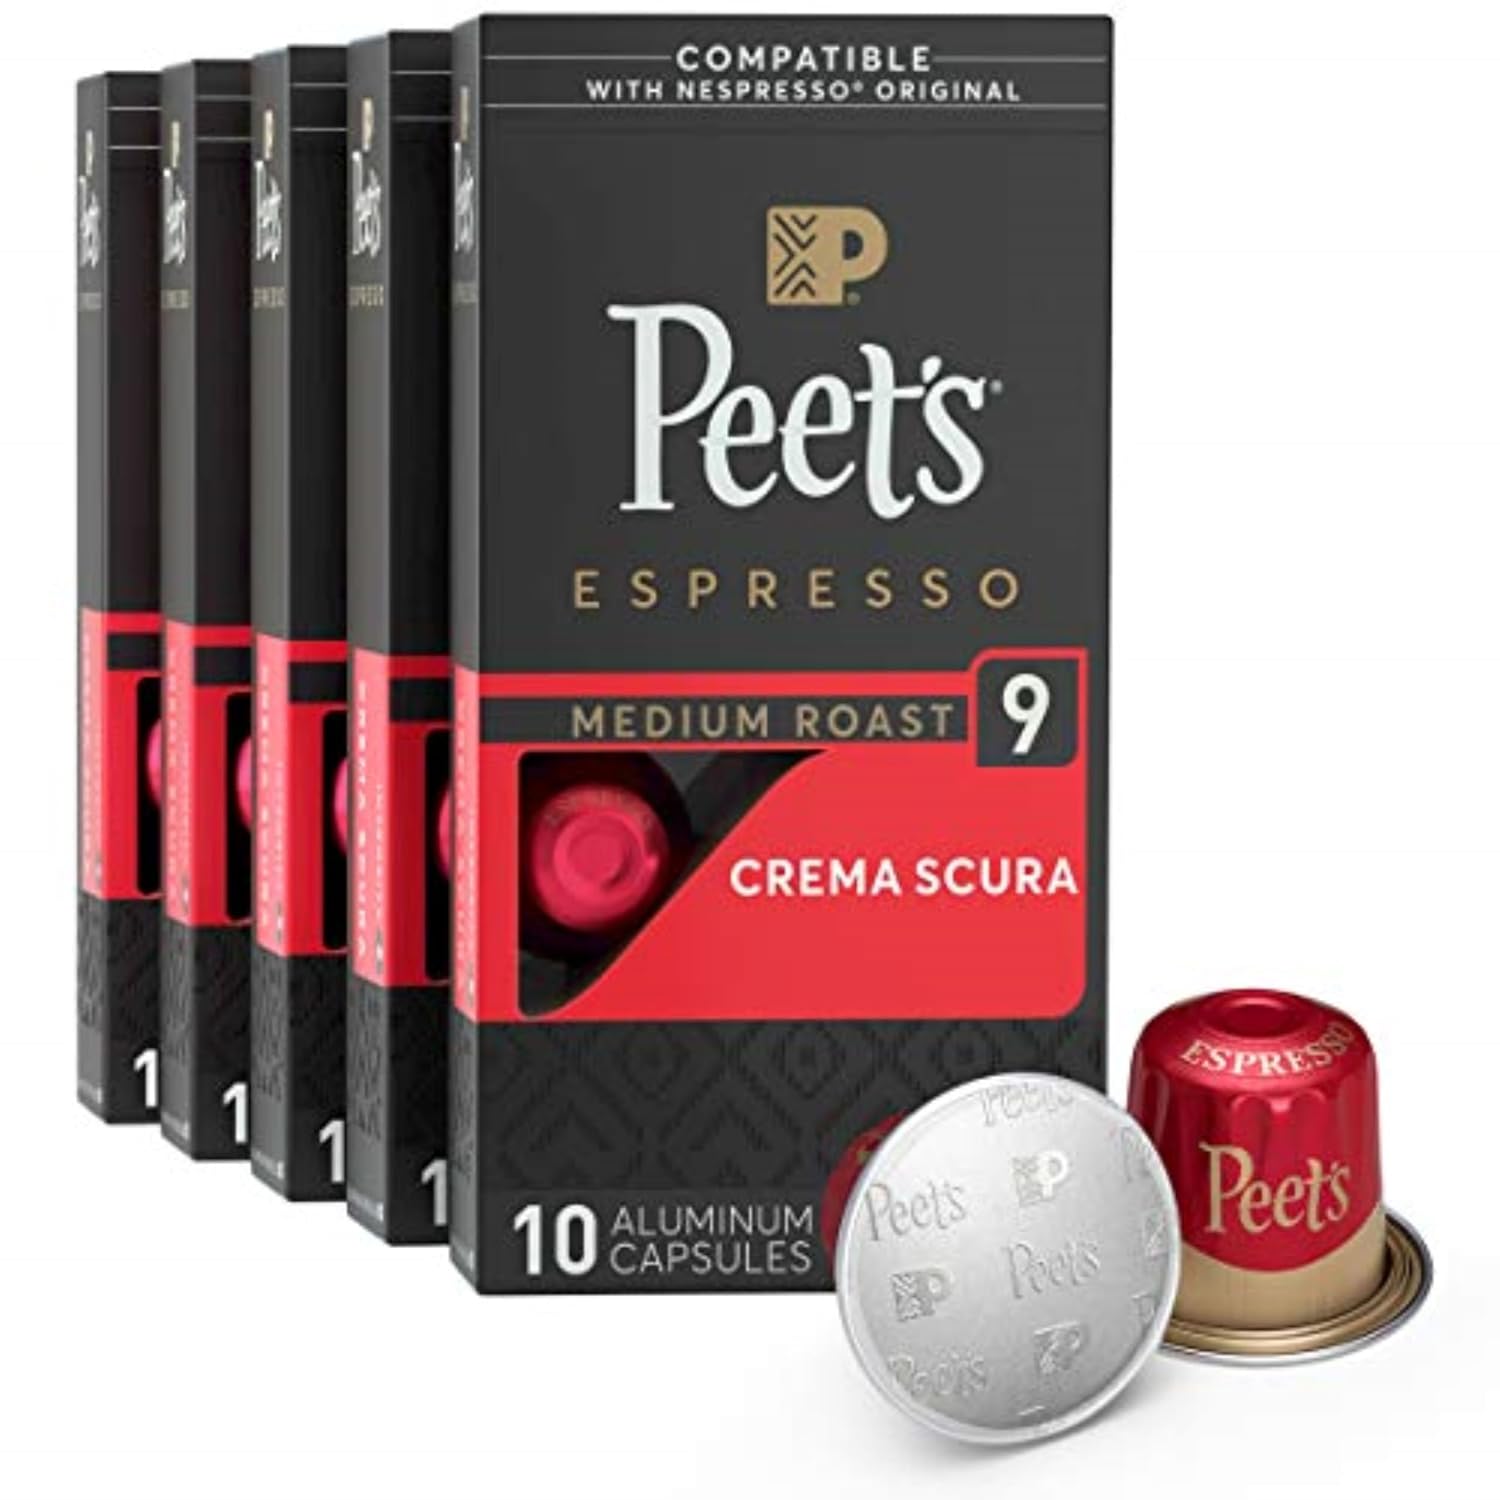 Peet's Coffee, Medium Roast Espresso Pods, Crema Scura Intensity 9, 50 Count (5 Boxes of 10 Espresso Capsules)